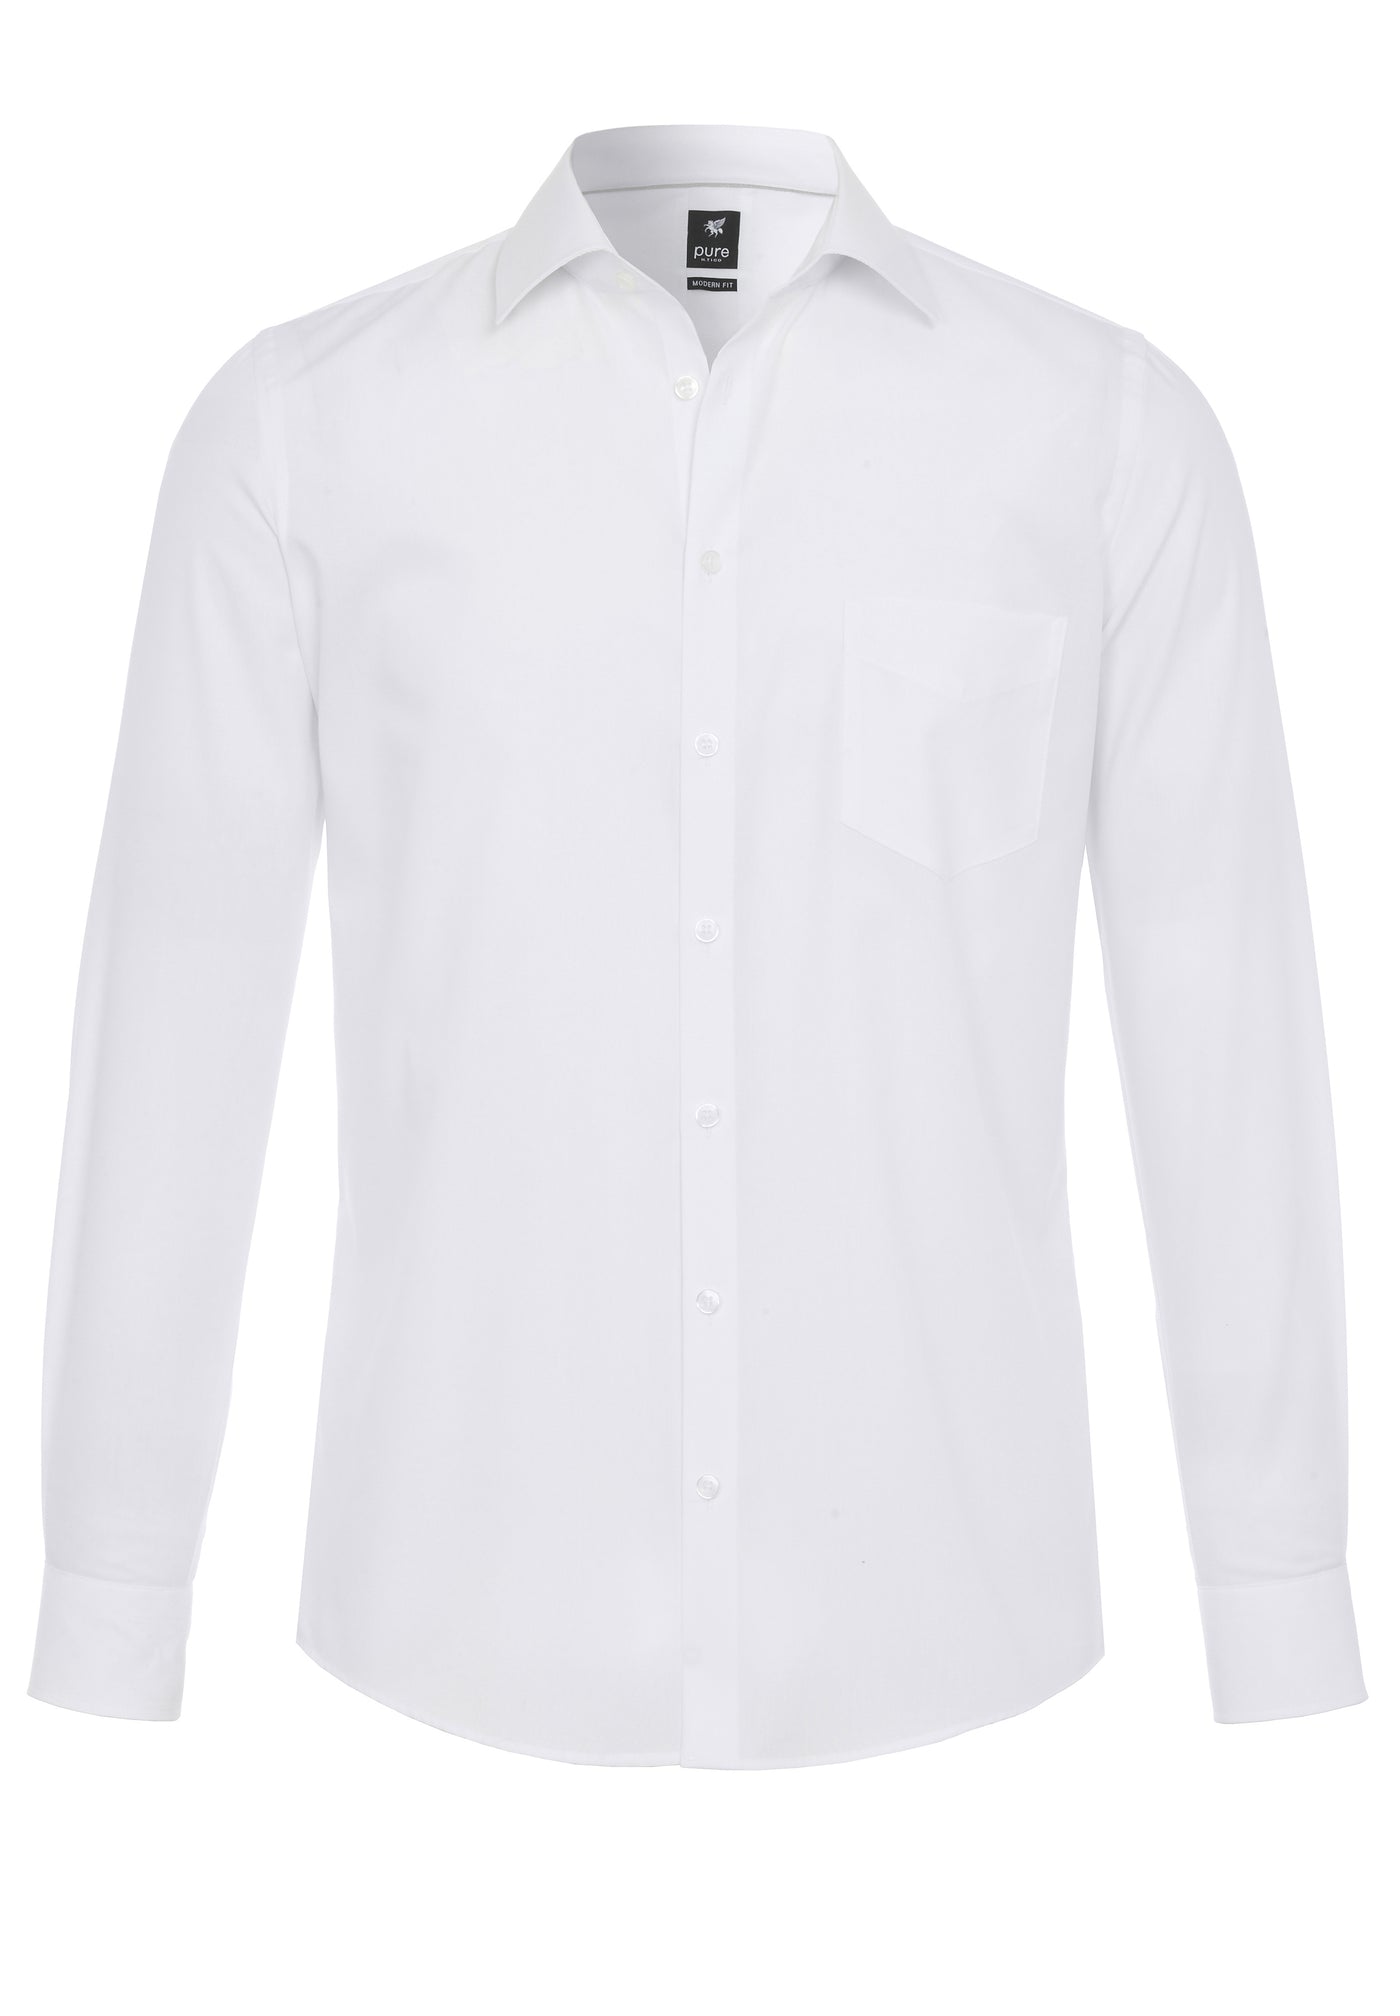 3379-420 - Hemd City Black - weiß - pureshirt